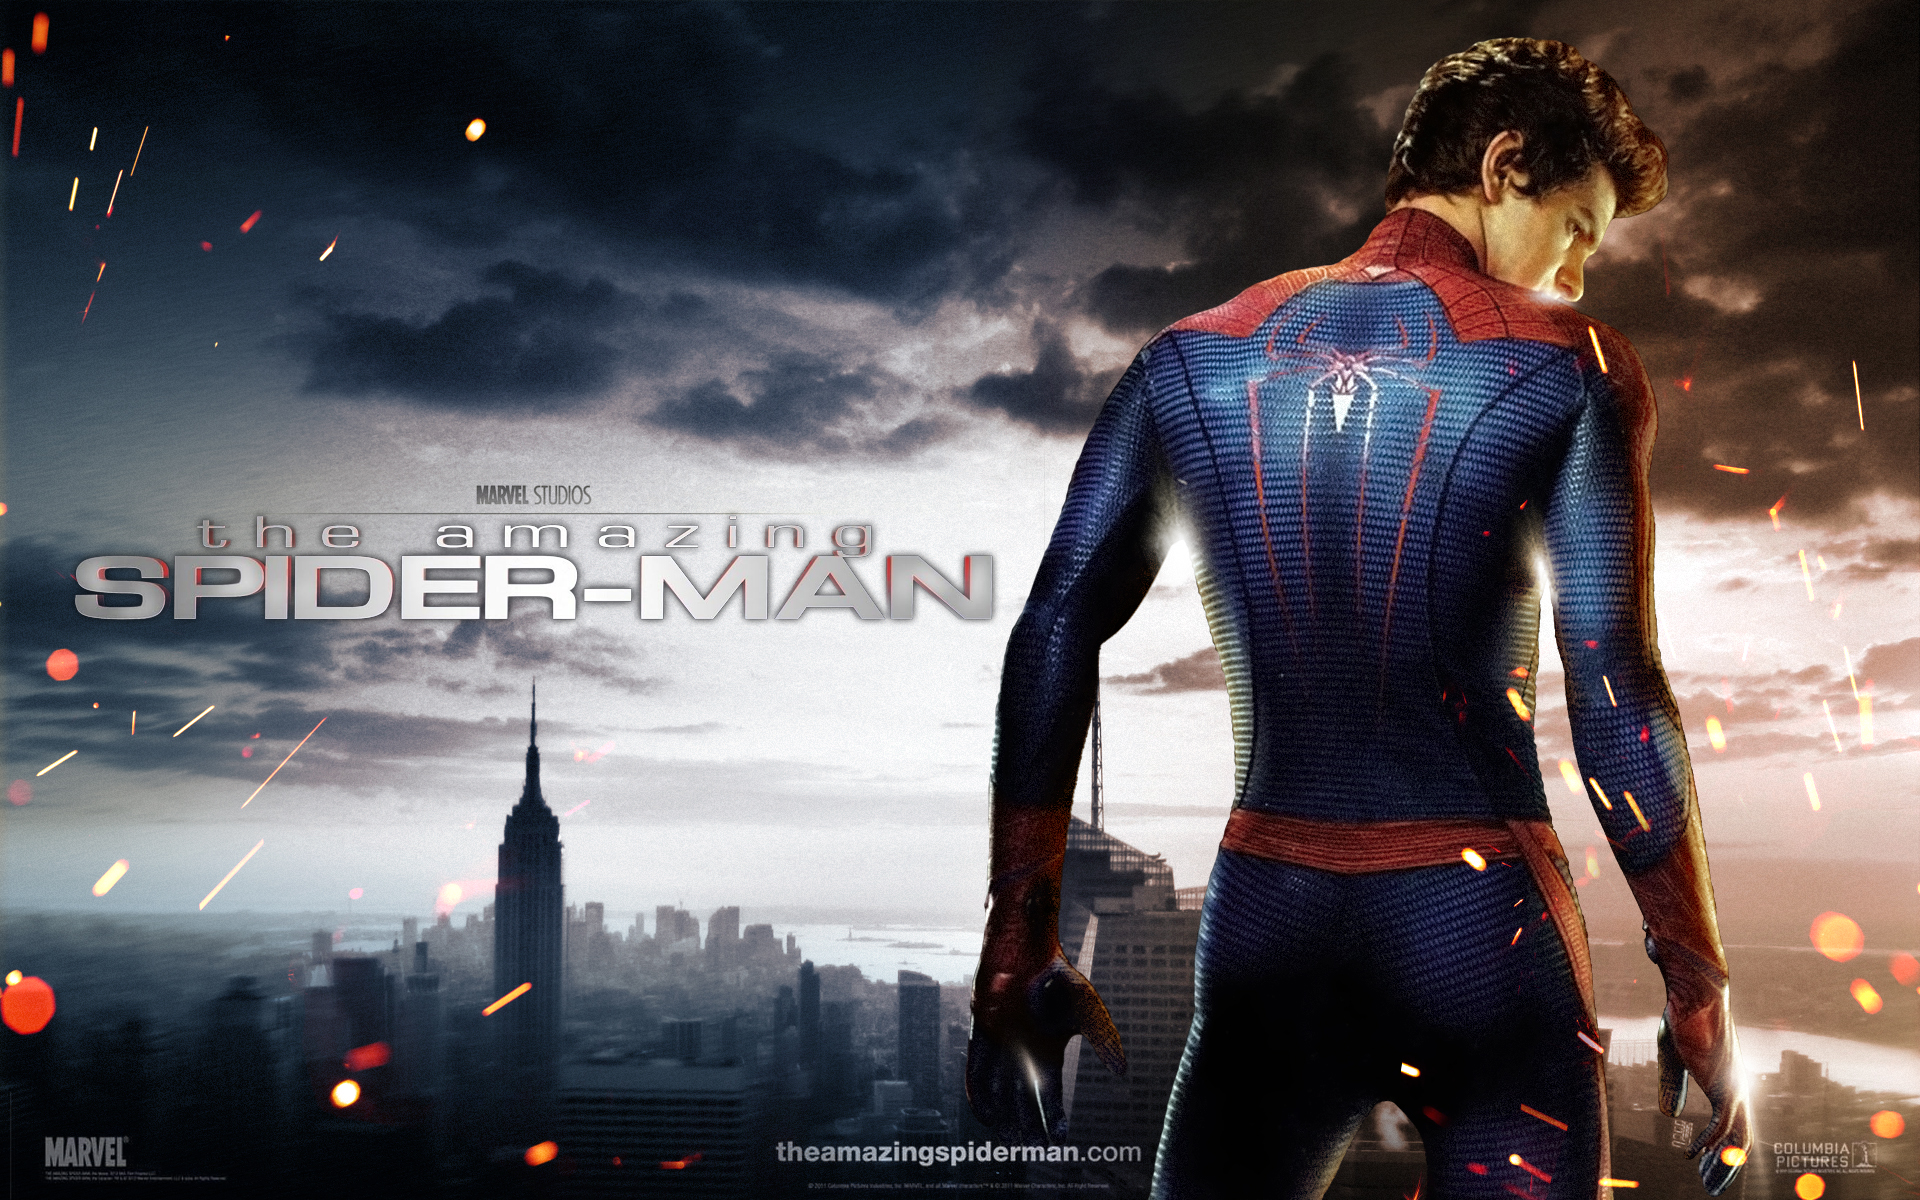 Descarga gratuita de fondo de pantalla para móvil de El Sorprendente Hombre Araña, Spider Man, Películas.